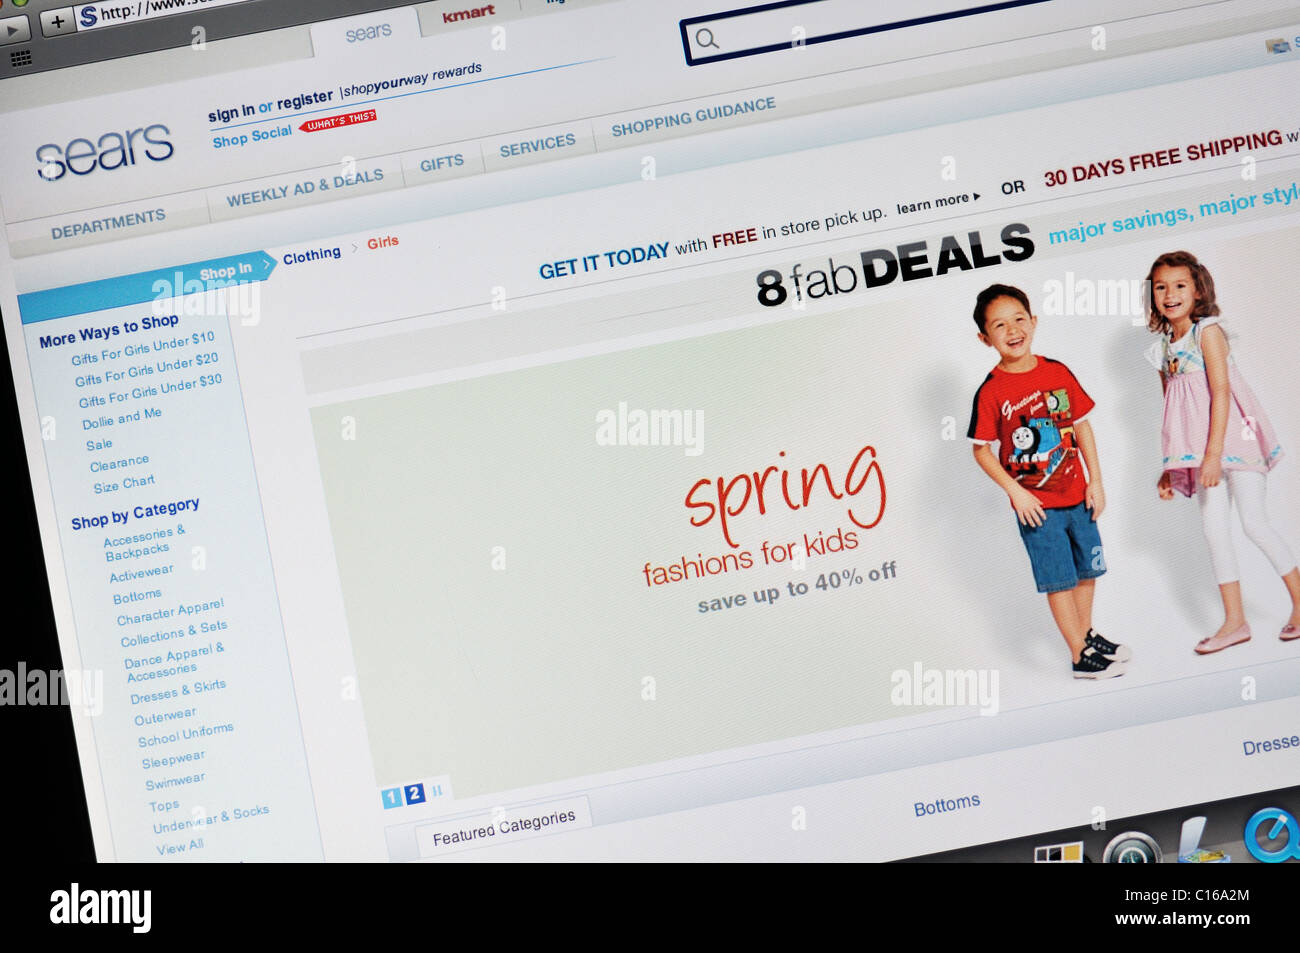 Sitio web de almacenes Sears Foto de stock